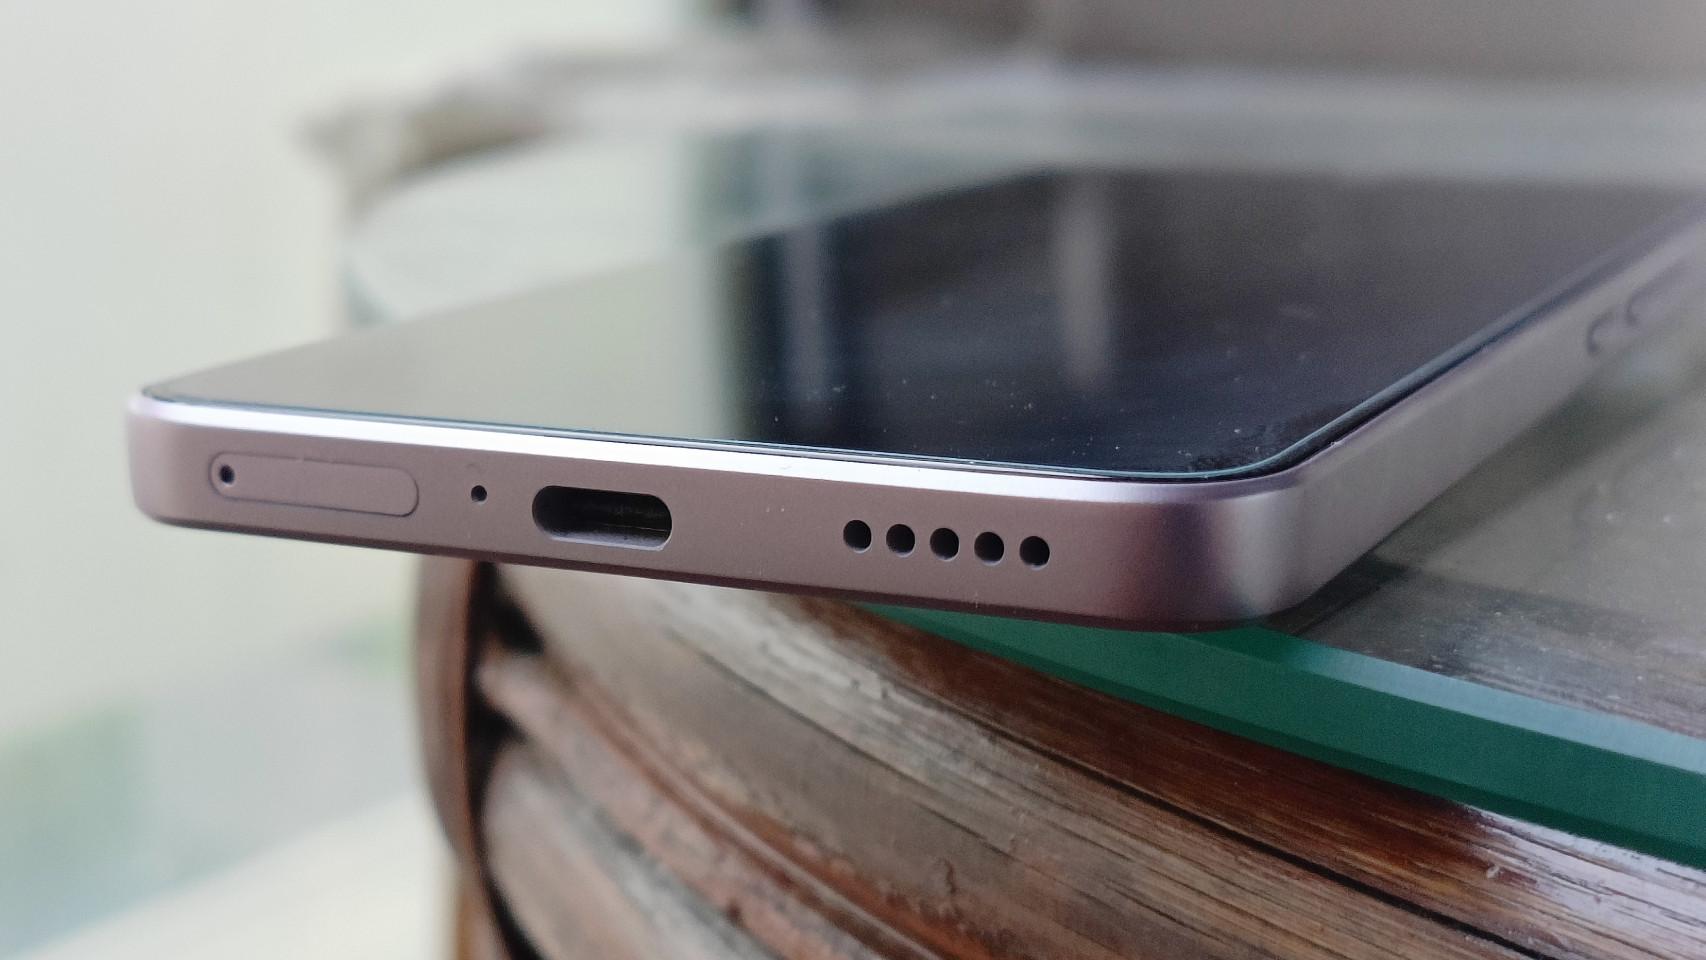 He probado el móvil Xiaomi pequeño y potente: ha cambiado mi opinión sobre  el tamaño perfecto